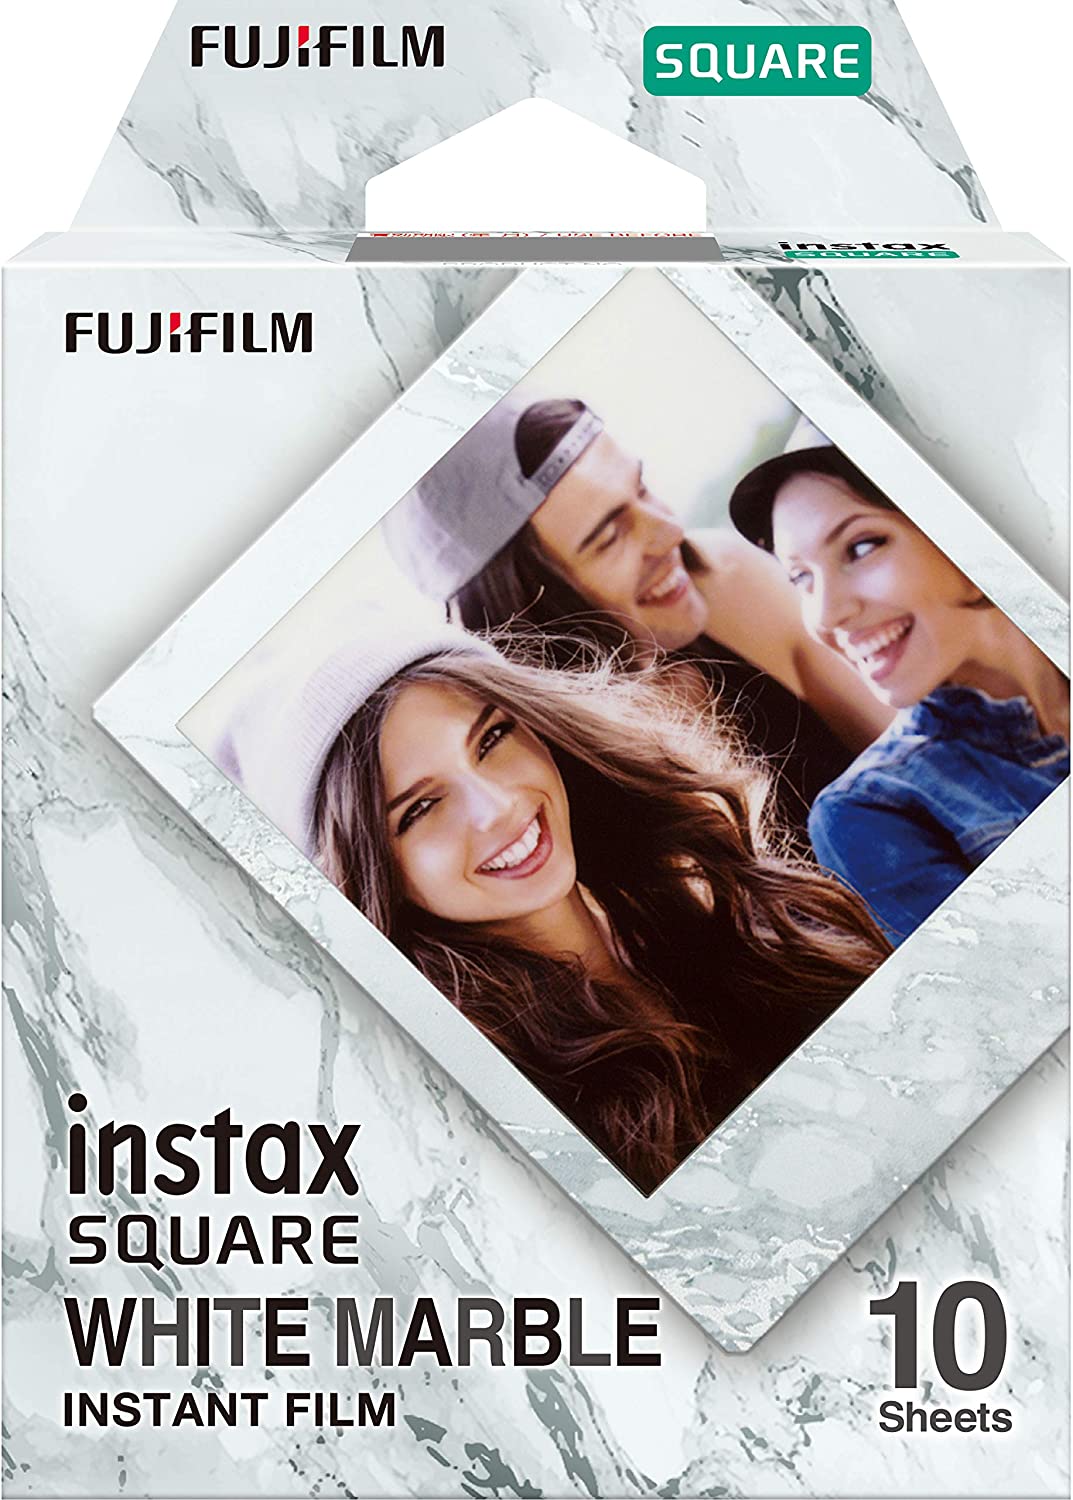 Fujifilm Instax Square Rainbow Instant Film - 10 Exposures